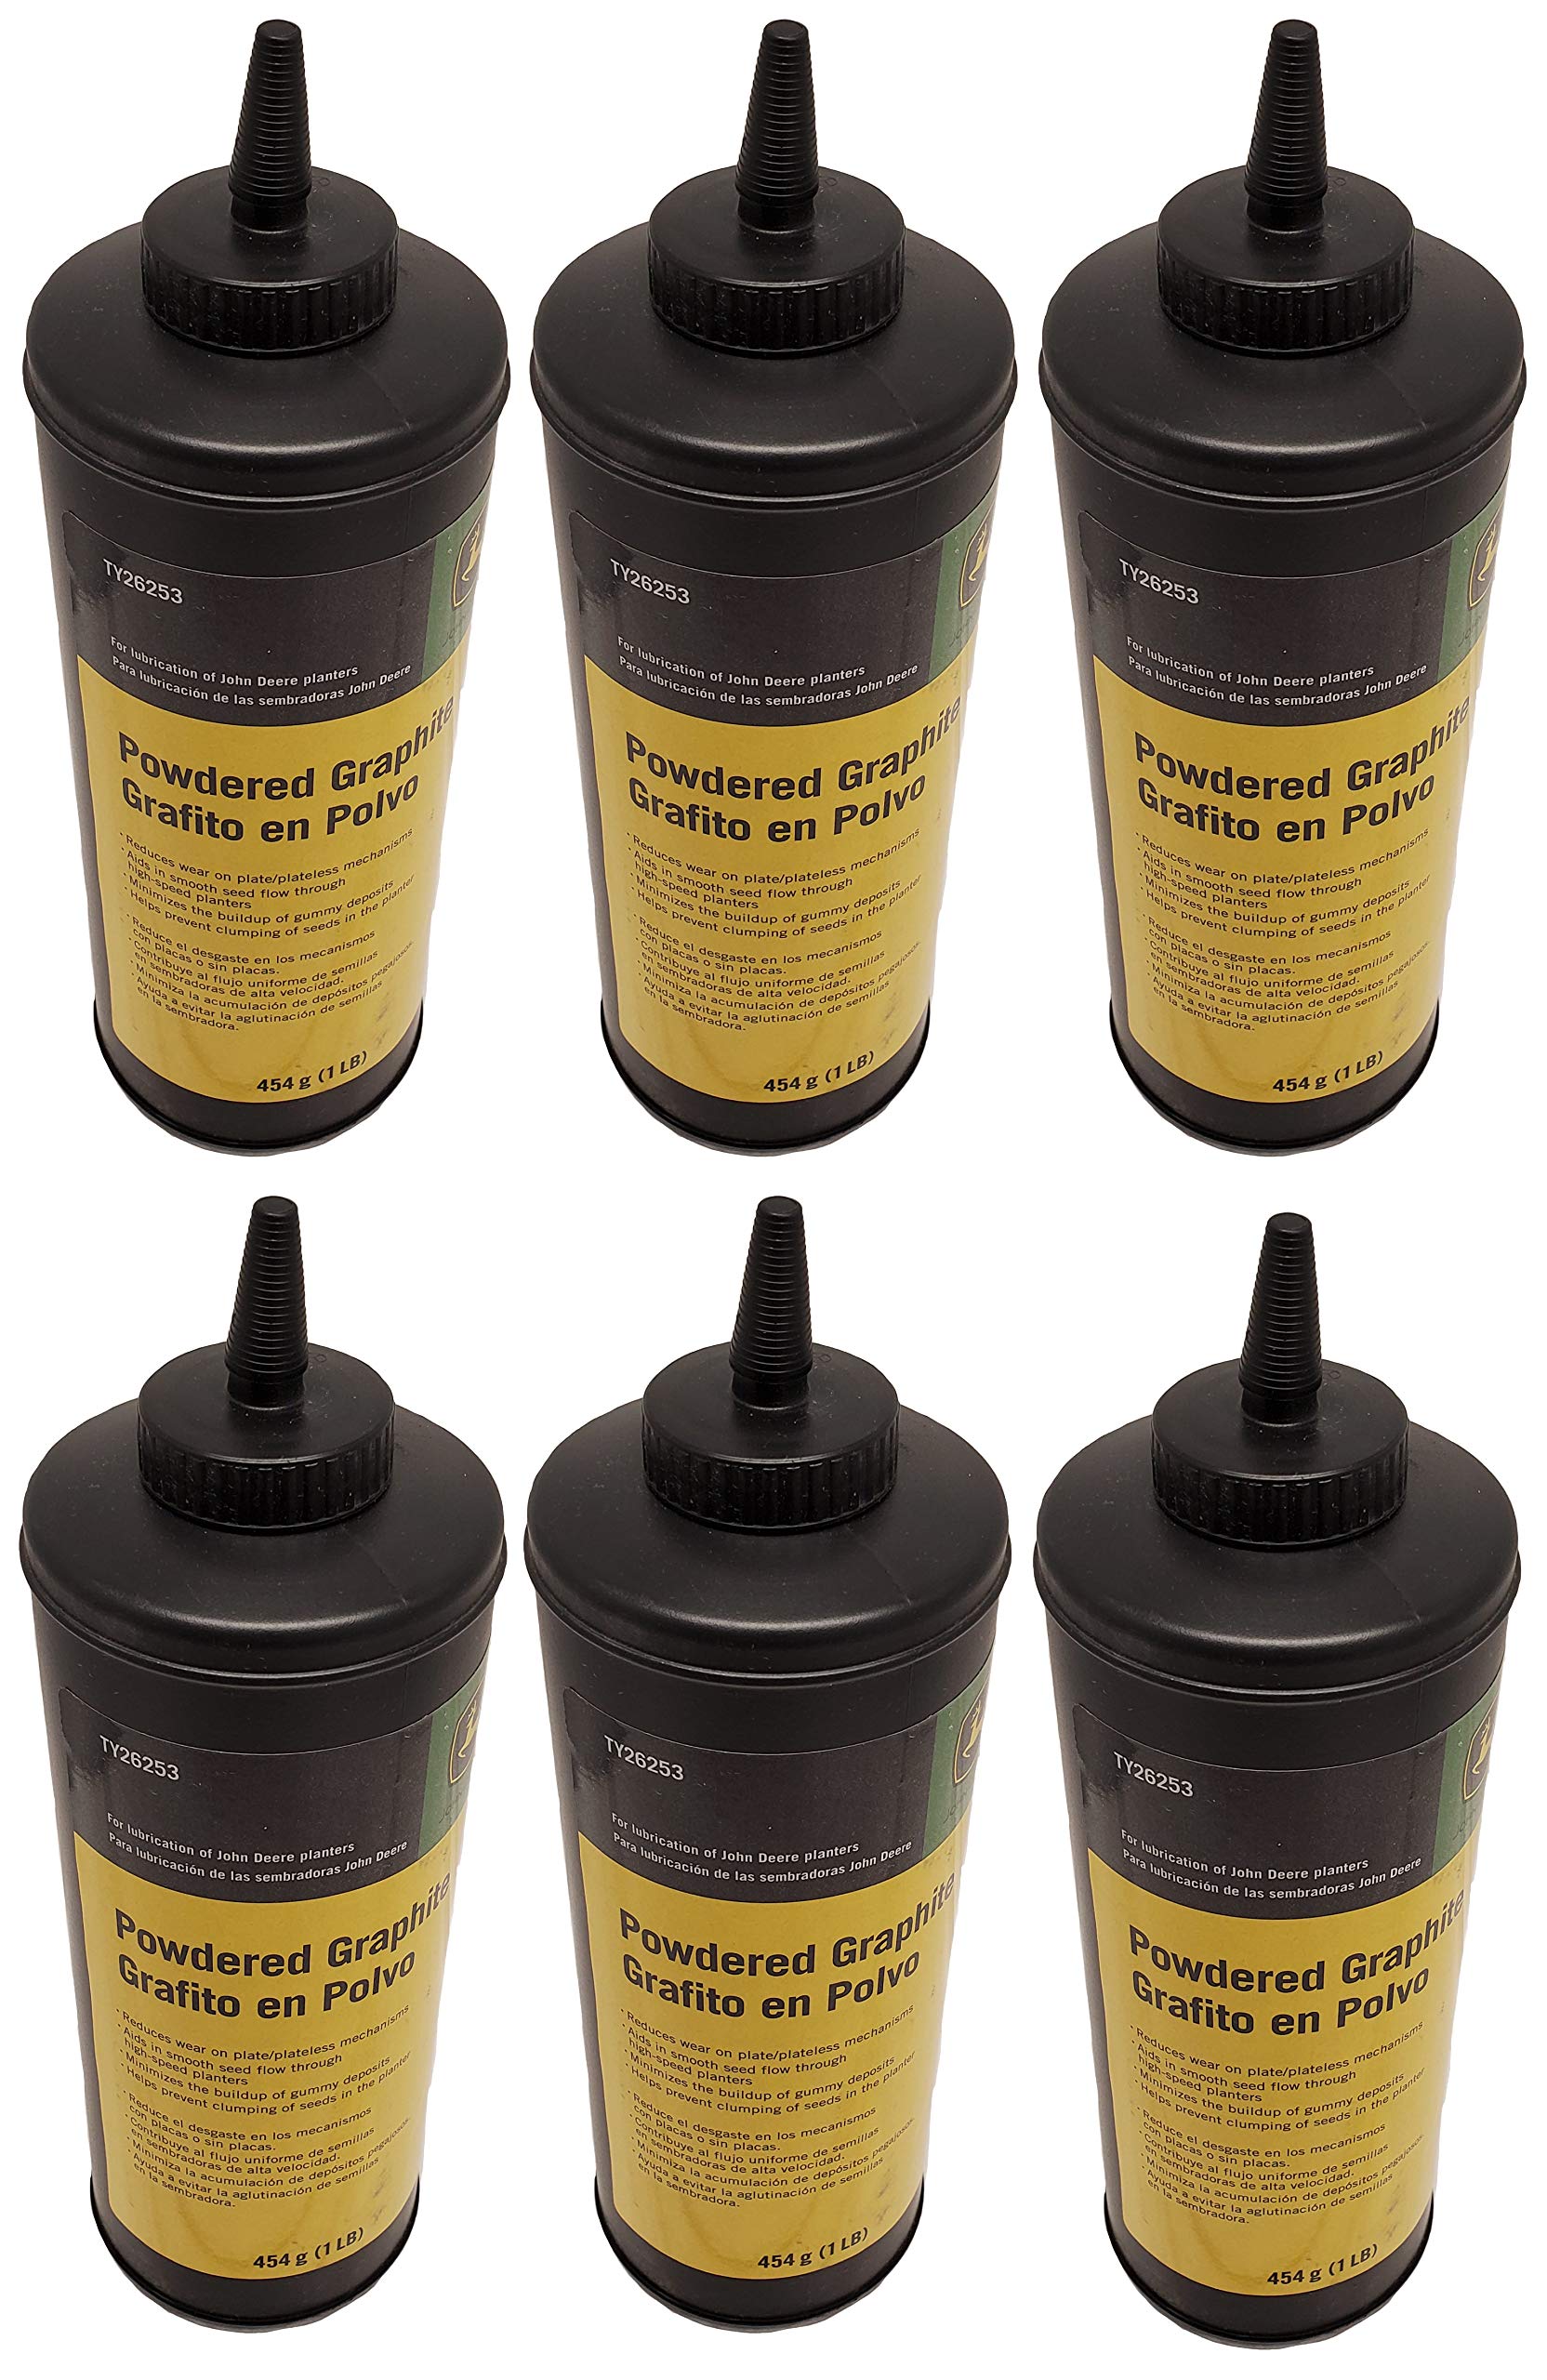 John Deere Original Equipment Powdered Graphite (Set of 6) - TY26253,6 –